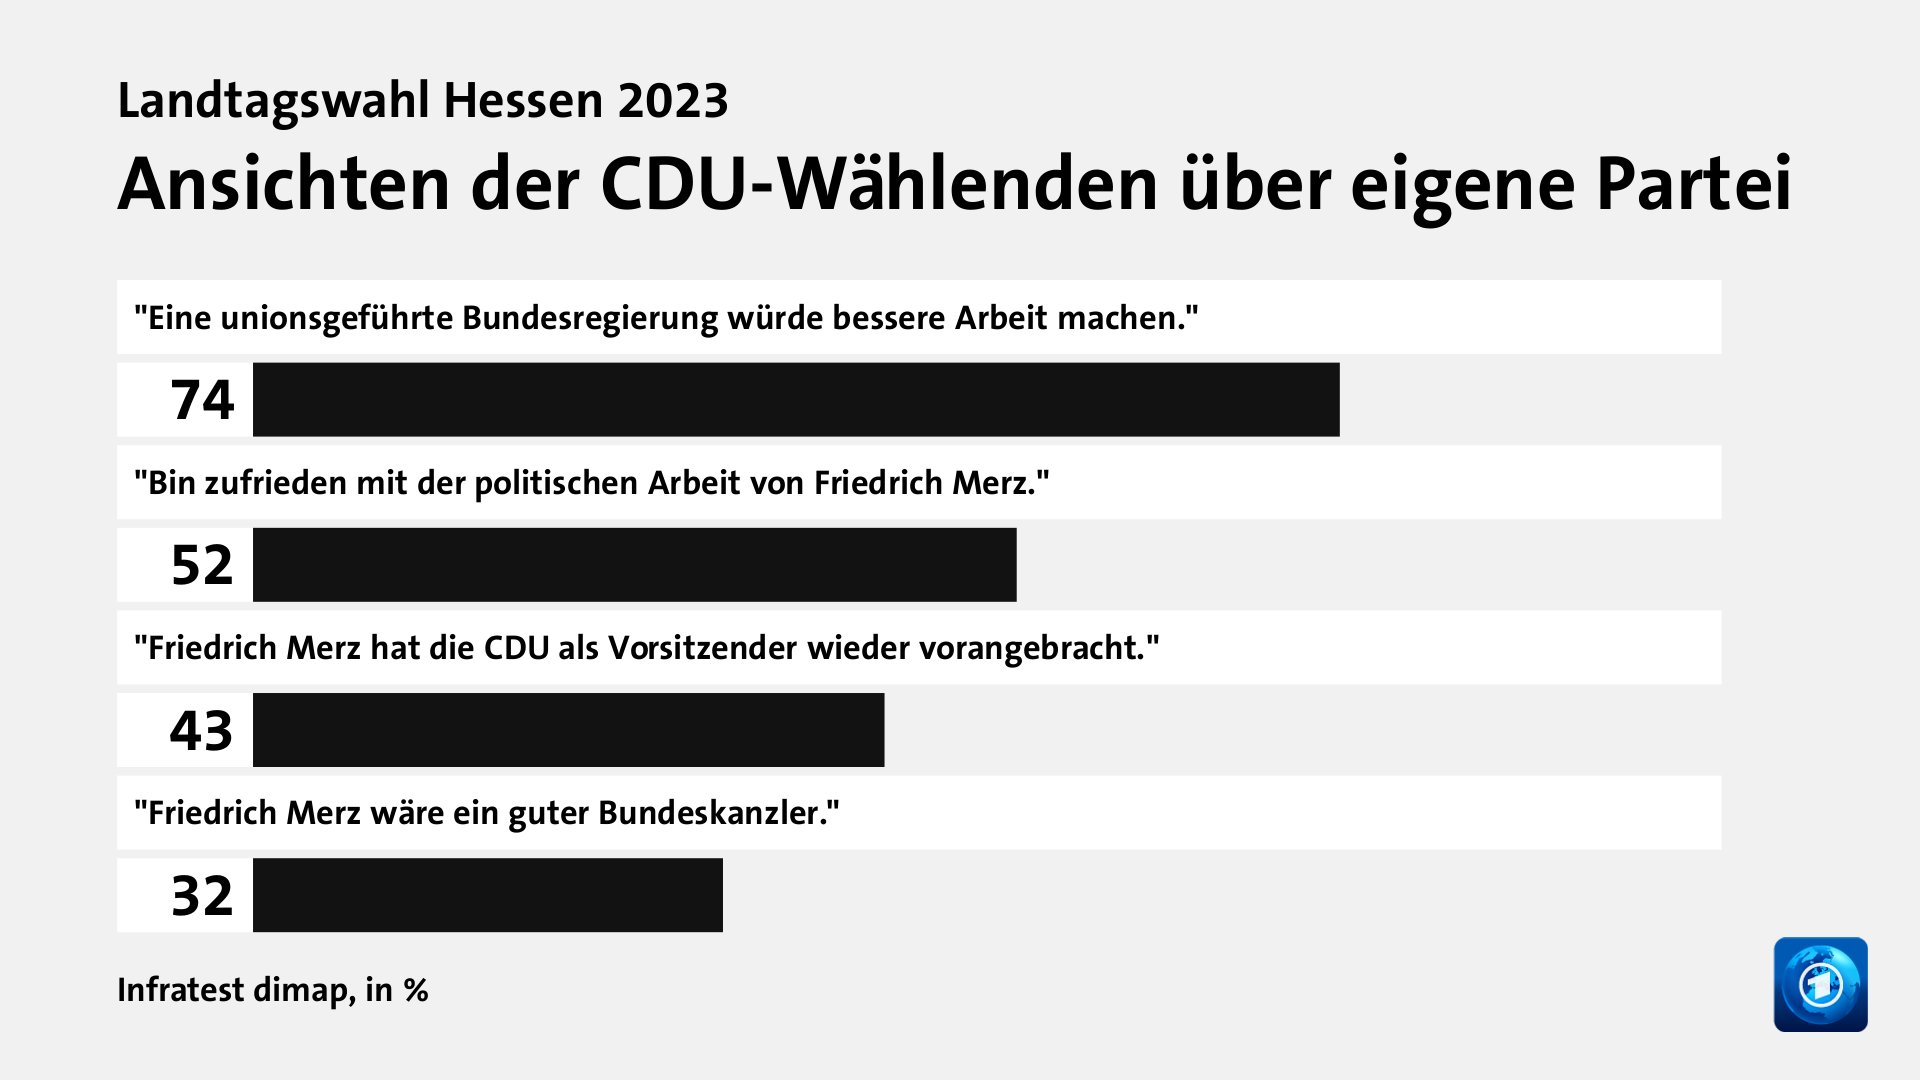 Ansichten der CDU-Wählenden über eigene Partei, in %: 